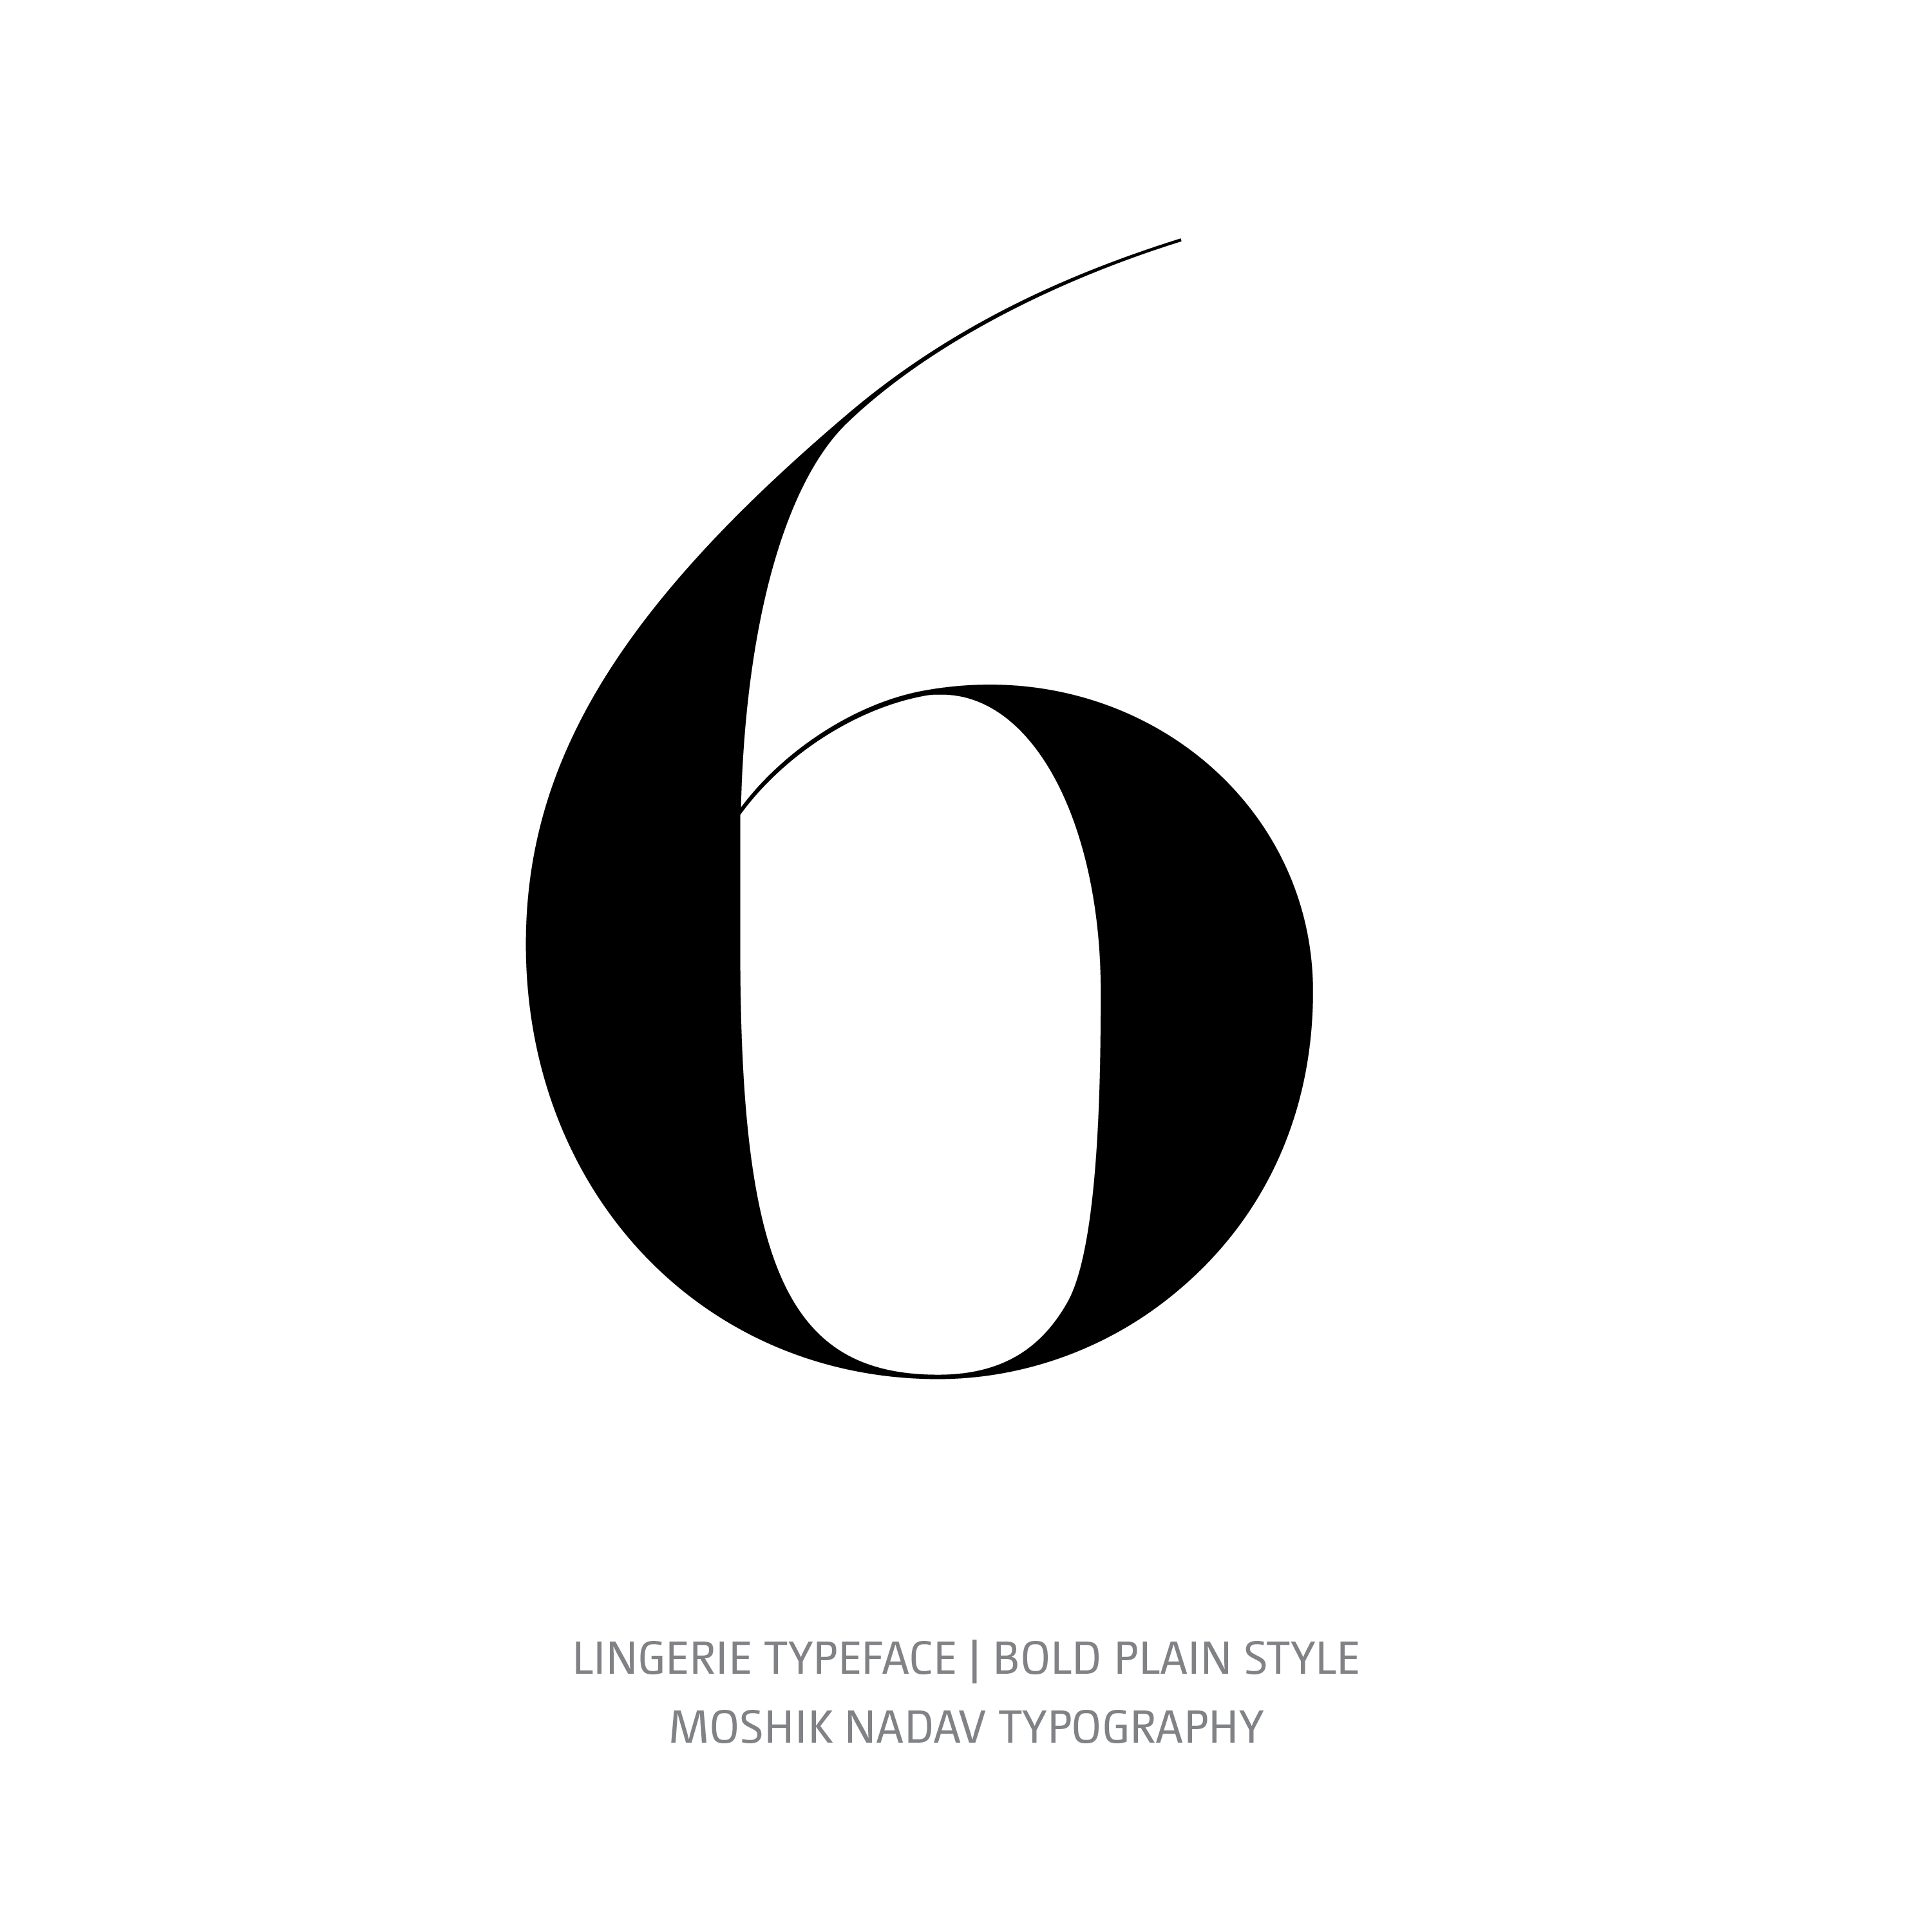 Lingerie Typeface Bold Plain 6